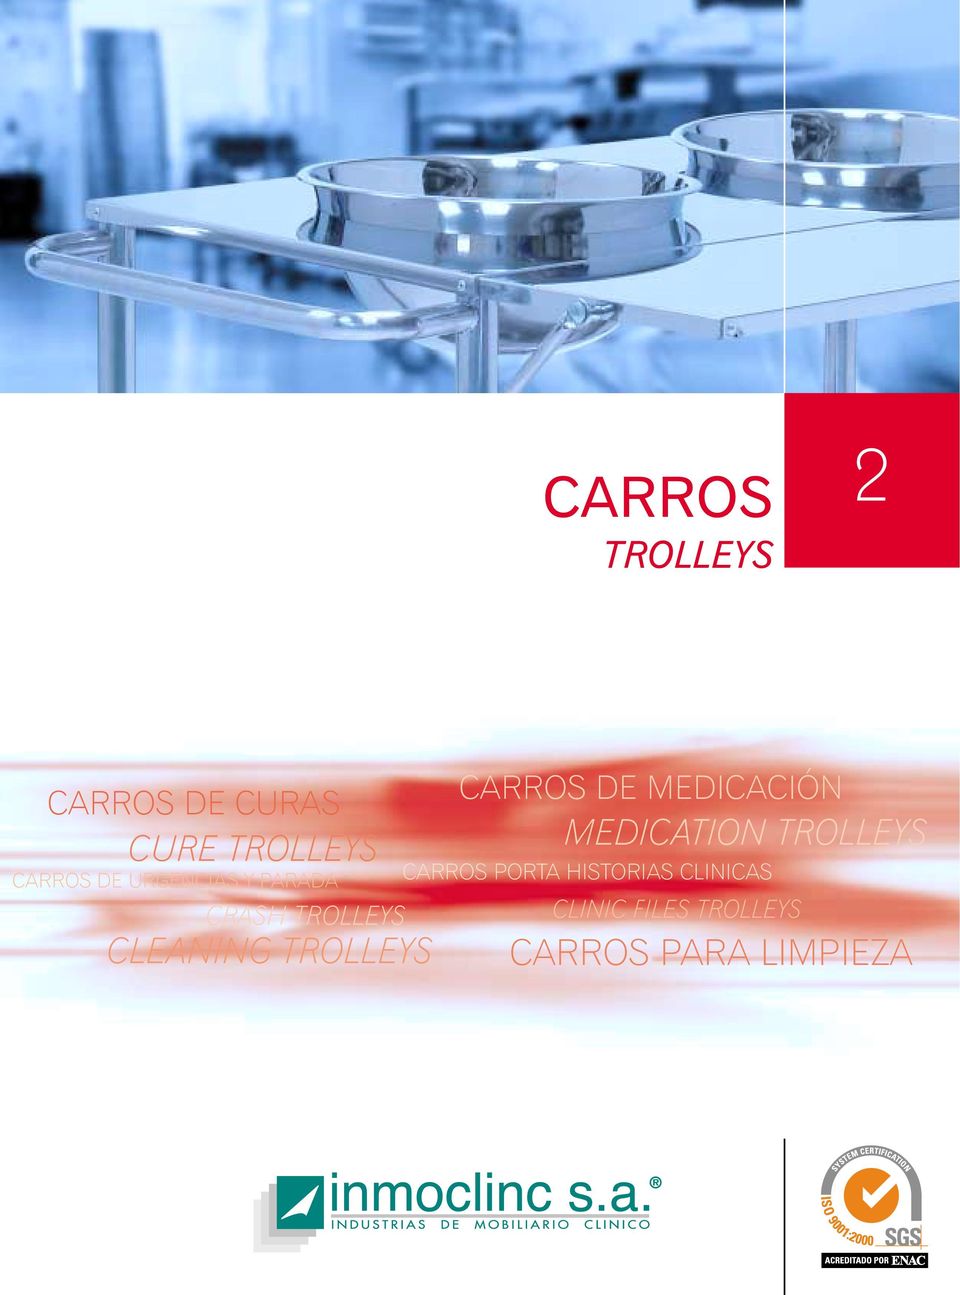 CARROS DE MEDICACIÓN MEDICATION TROLLEYS CARROS PORTA